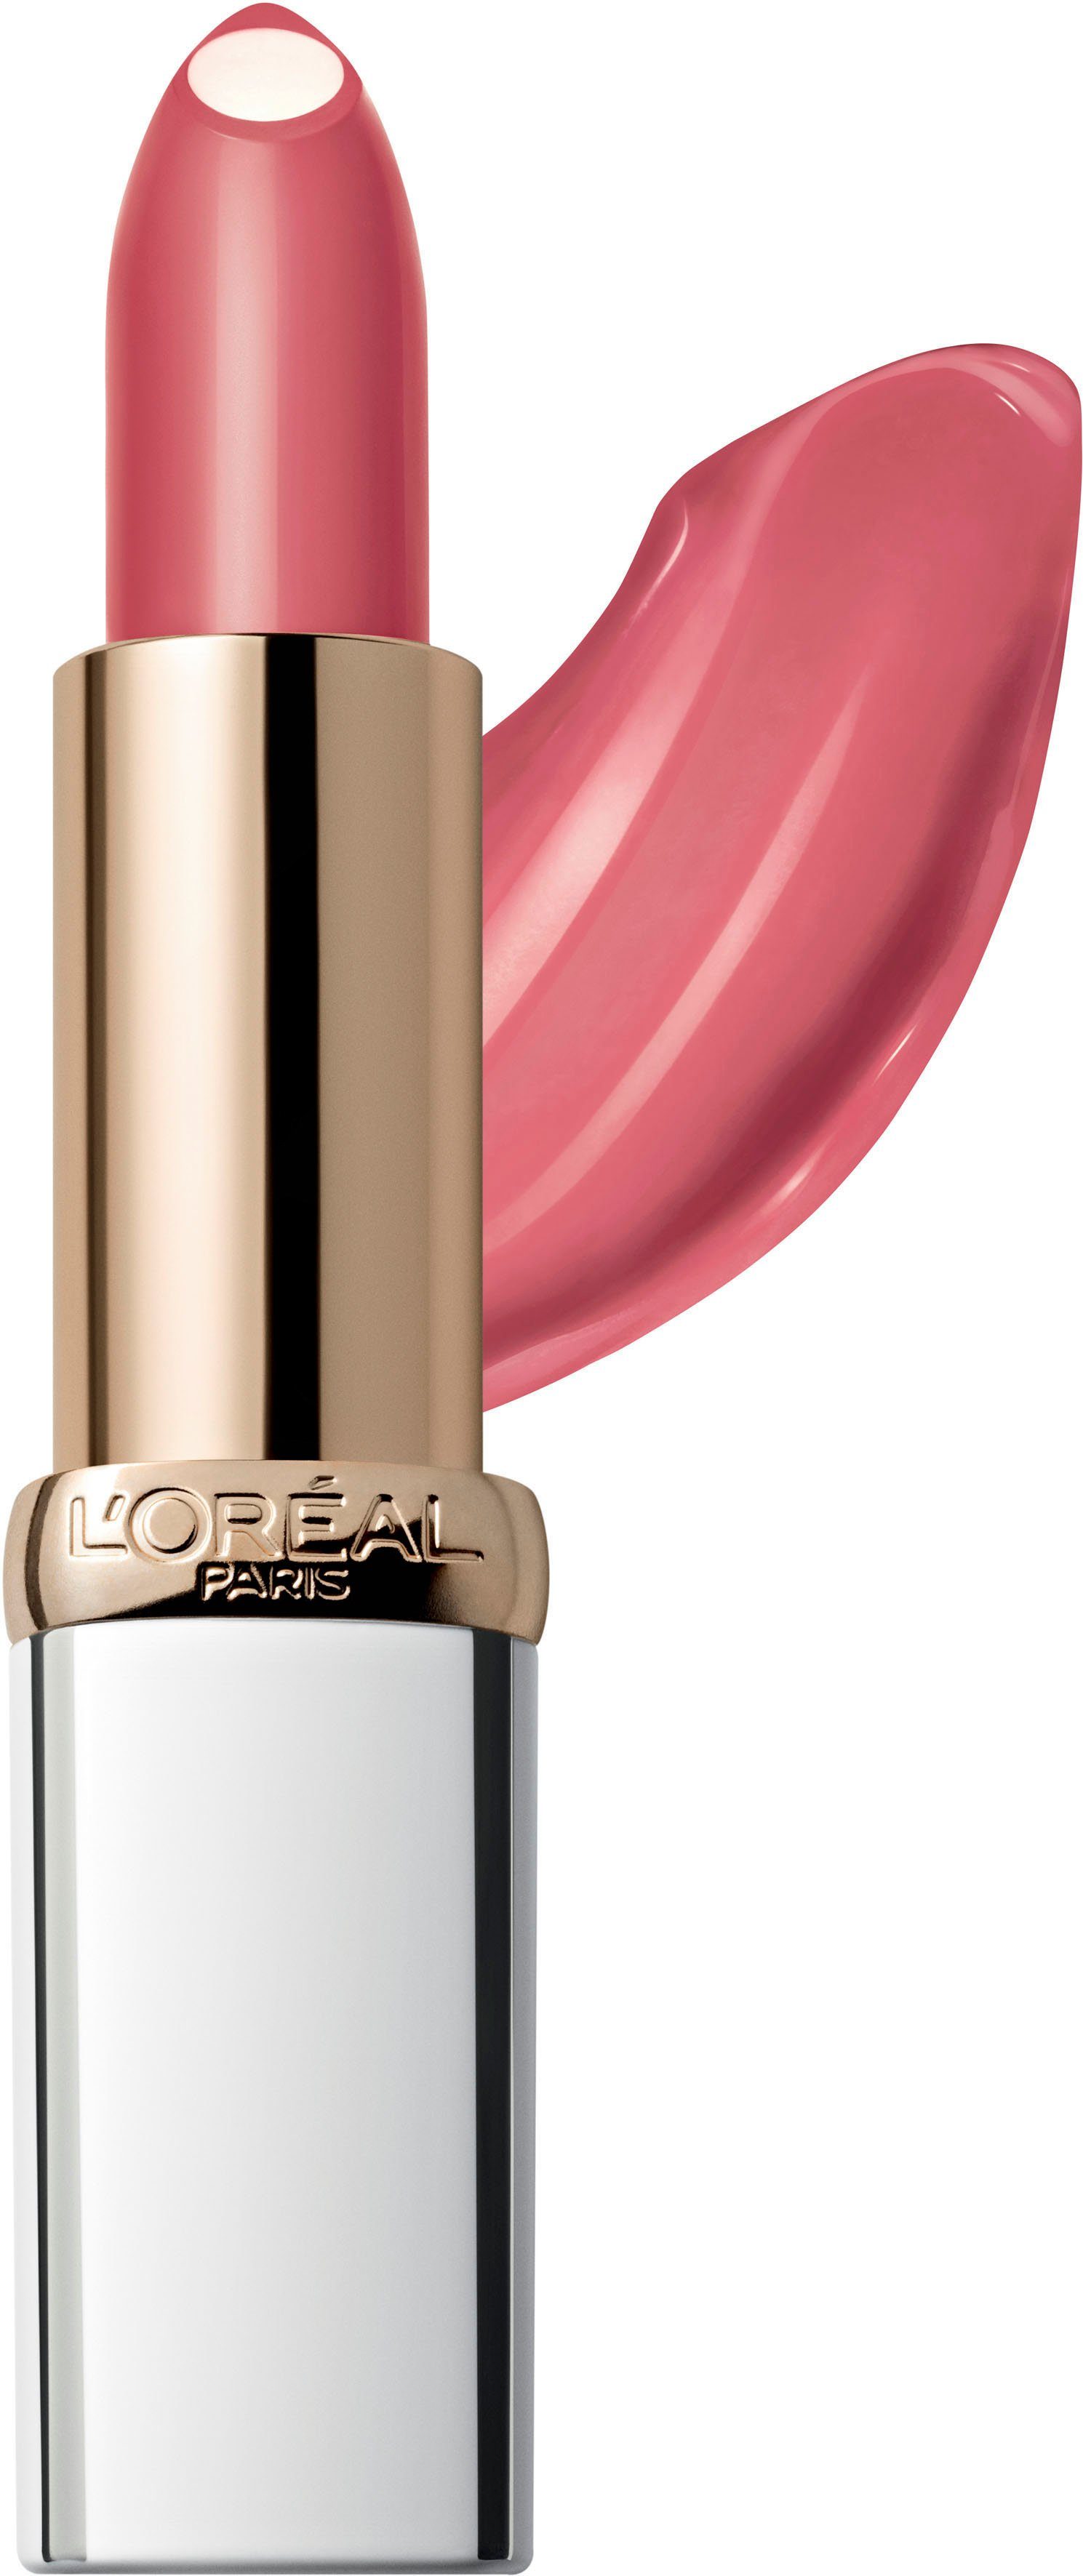 L'ORÉAL PARIS Lippenstift mit Charming Pflege-Kern Age Dust Perfect, 112 Pink feuchtigkeitsspendendem